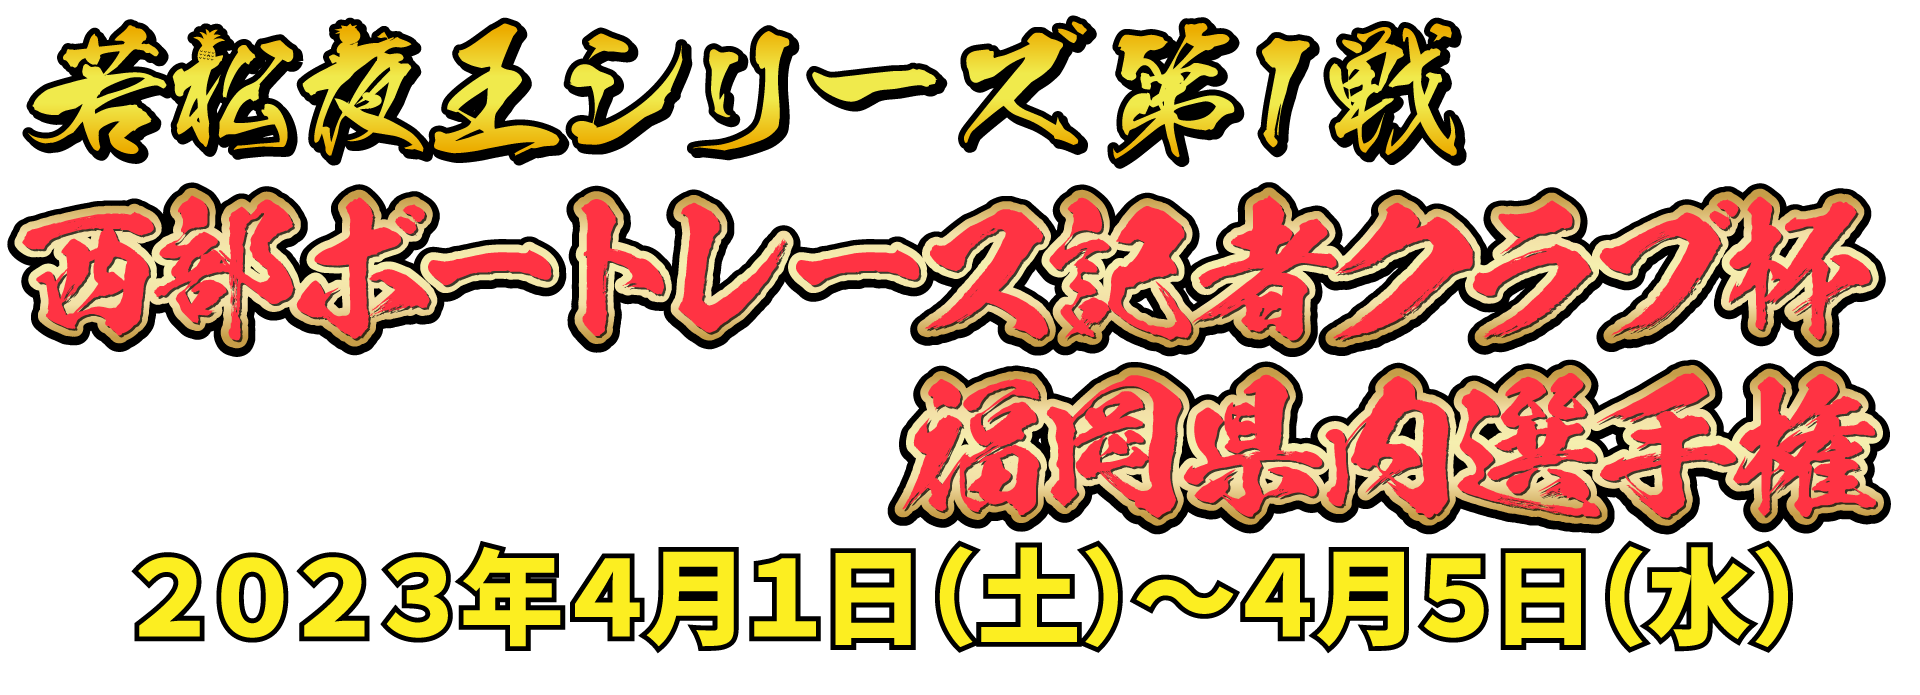 若松夜王シリーズ第1戦 福岡ソフトバンクホークス杯福岡県内選手権